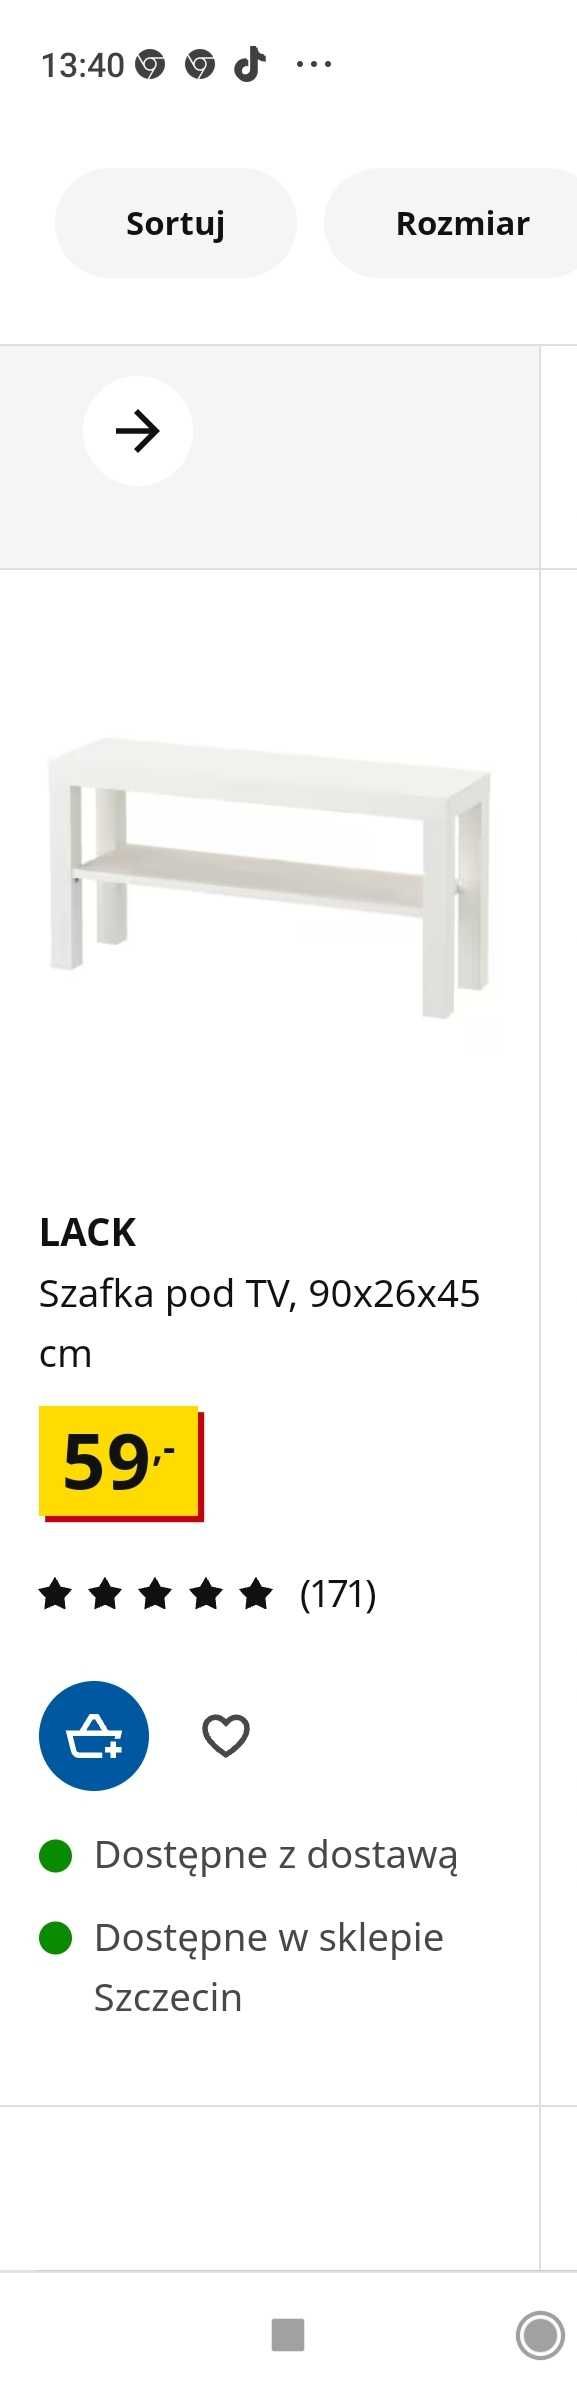 Szafka pod TV, LACK, IKEA